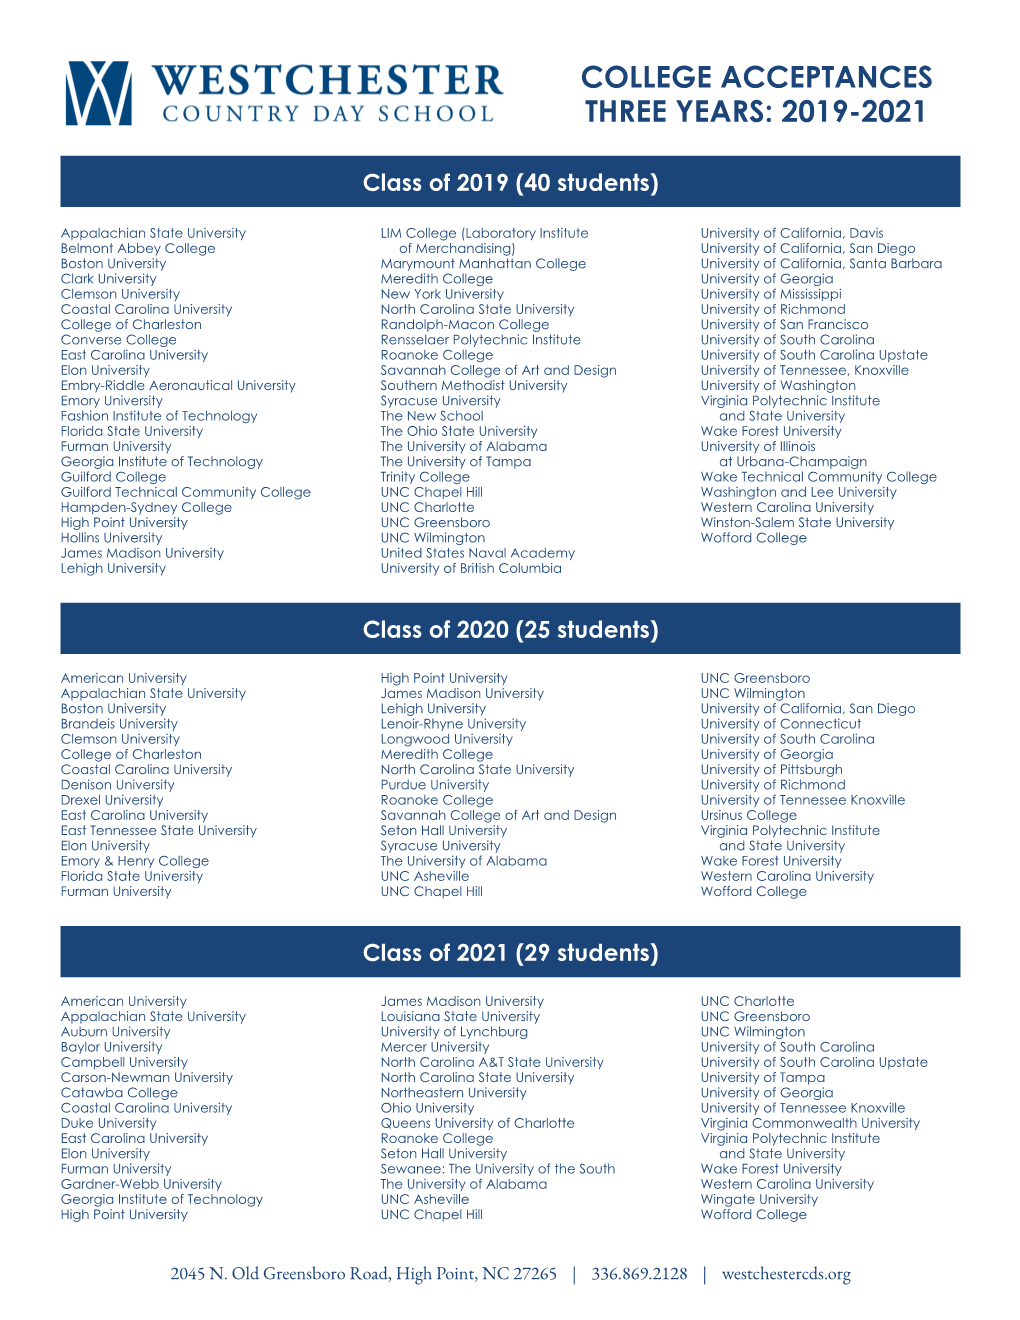 College Acceptances 2018-2020 |